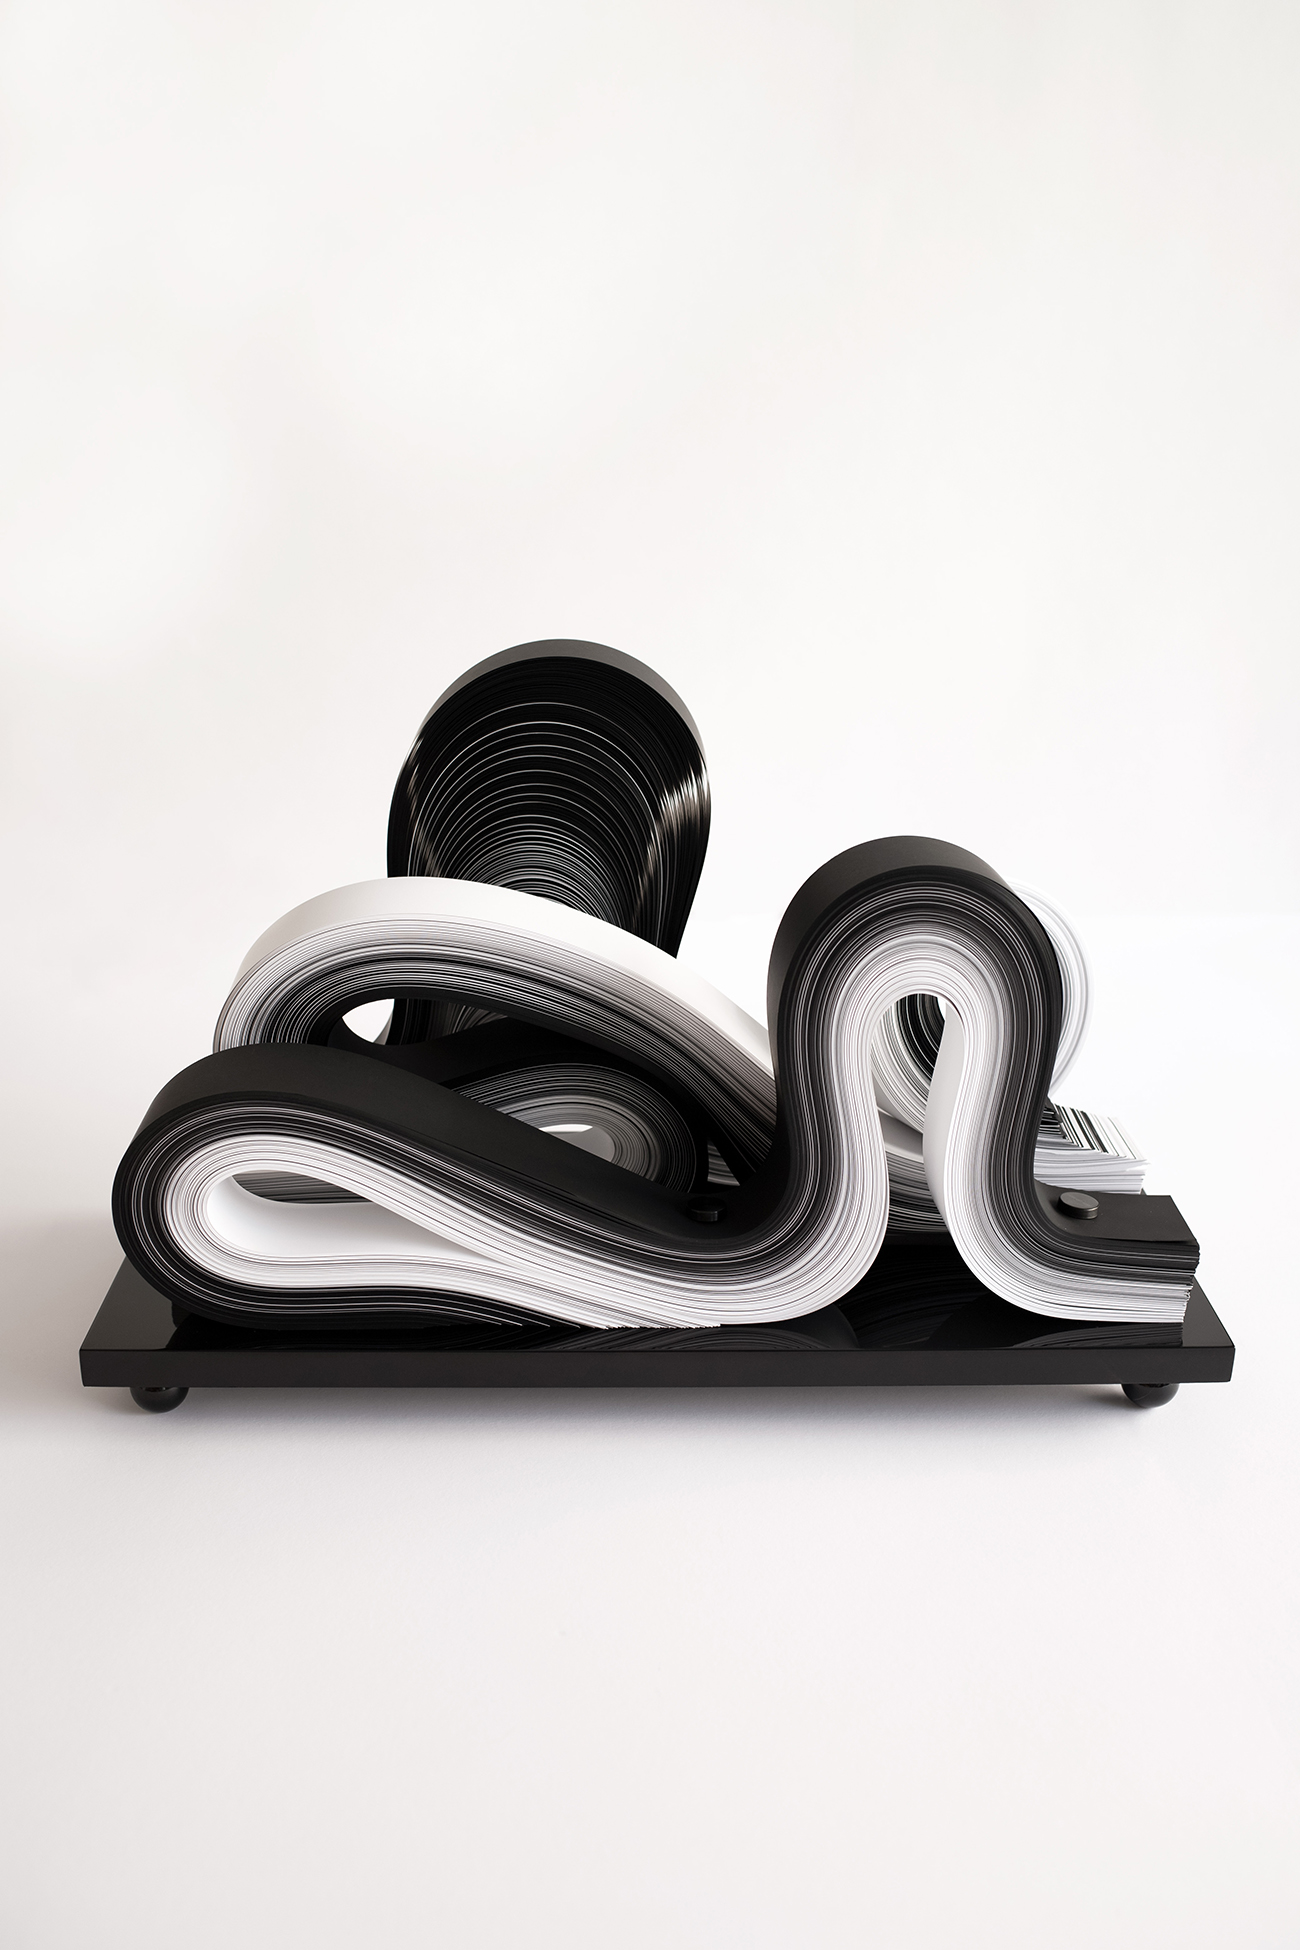 Carita studio design Maud Vantours Sculptures Paper art Paris